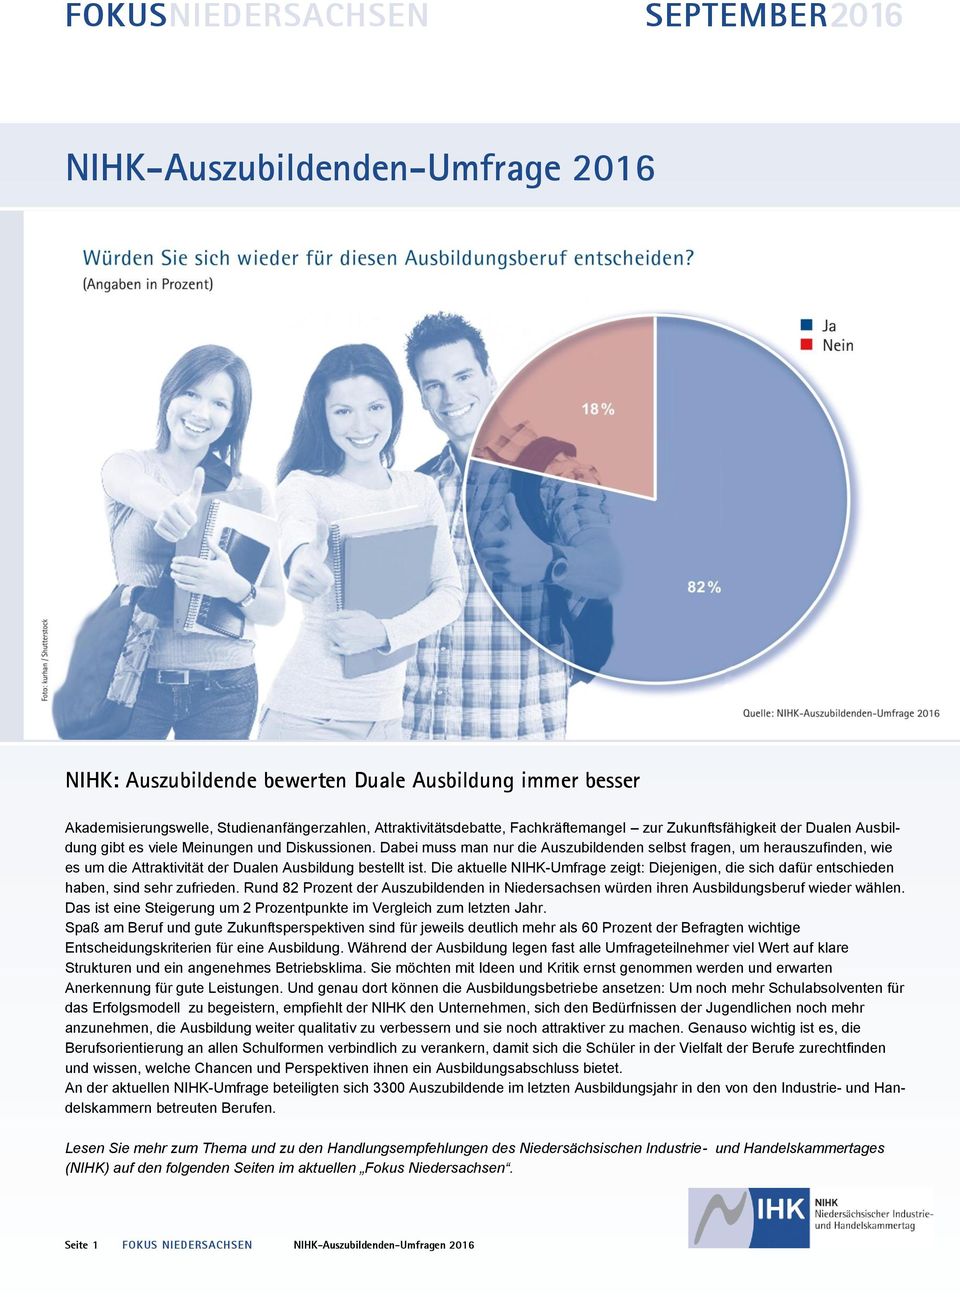 Die aktuelle NIHK-Umfrage zeigt: Diejenigen, die sich dafür entschieden haben, sind sehr zufrieden. Rund 82 Prozent der Auszubildenden in Niedersachsen würden ihren Ausbildungsberuf wieder wählen.